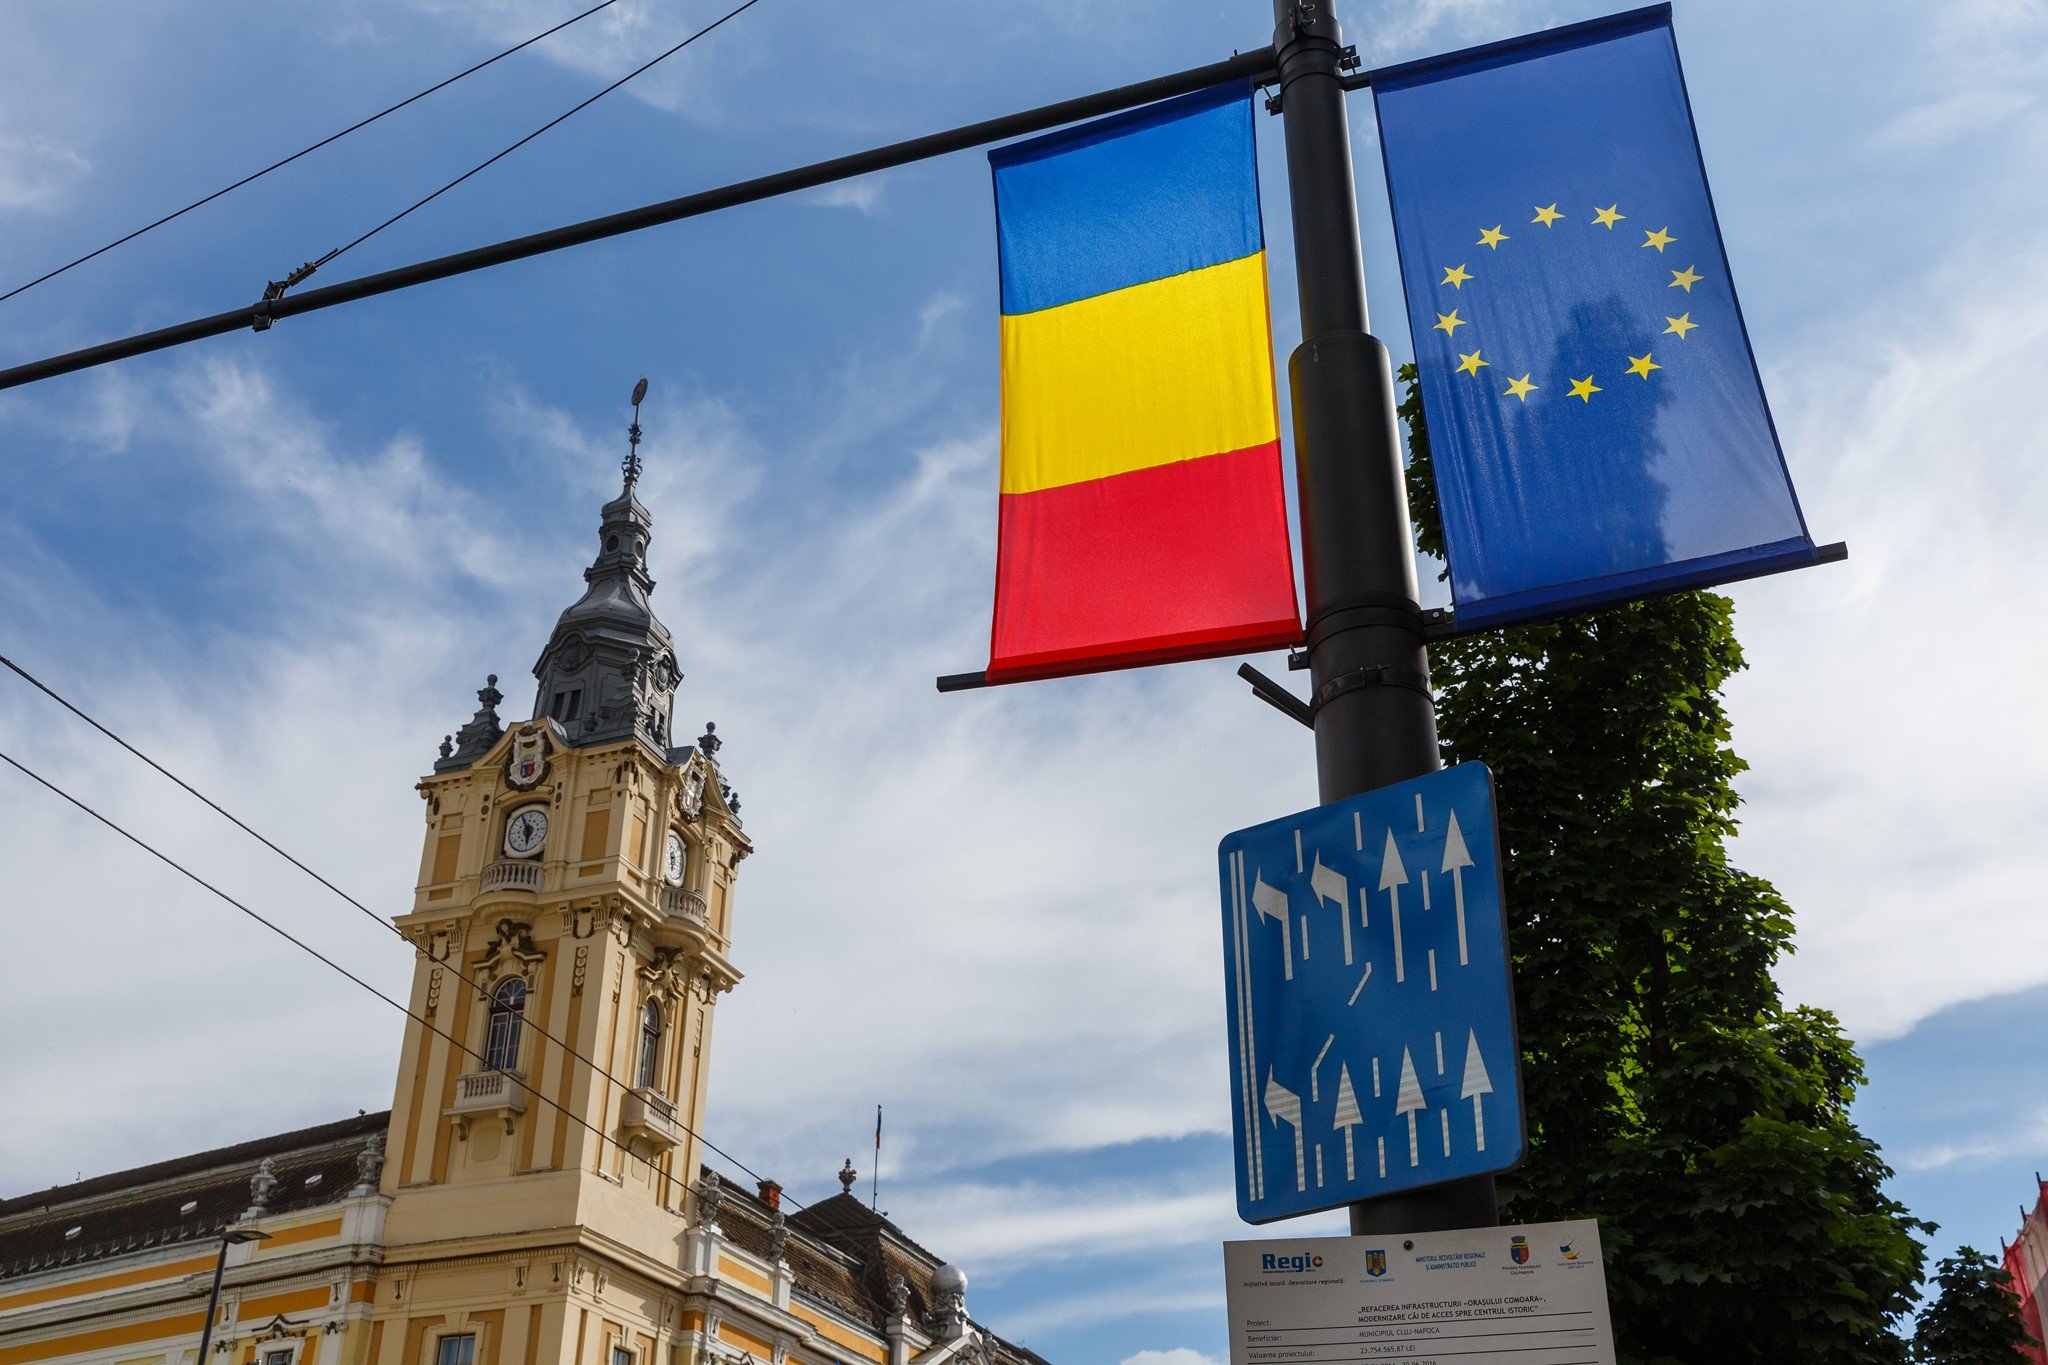 Ziua Națională a Independenței României celebrată astăzi, 10 mai, la Cluj-Napoca